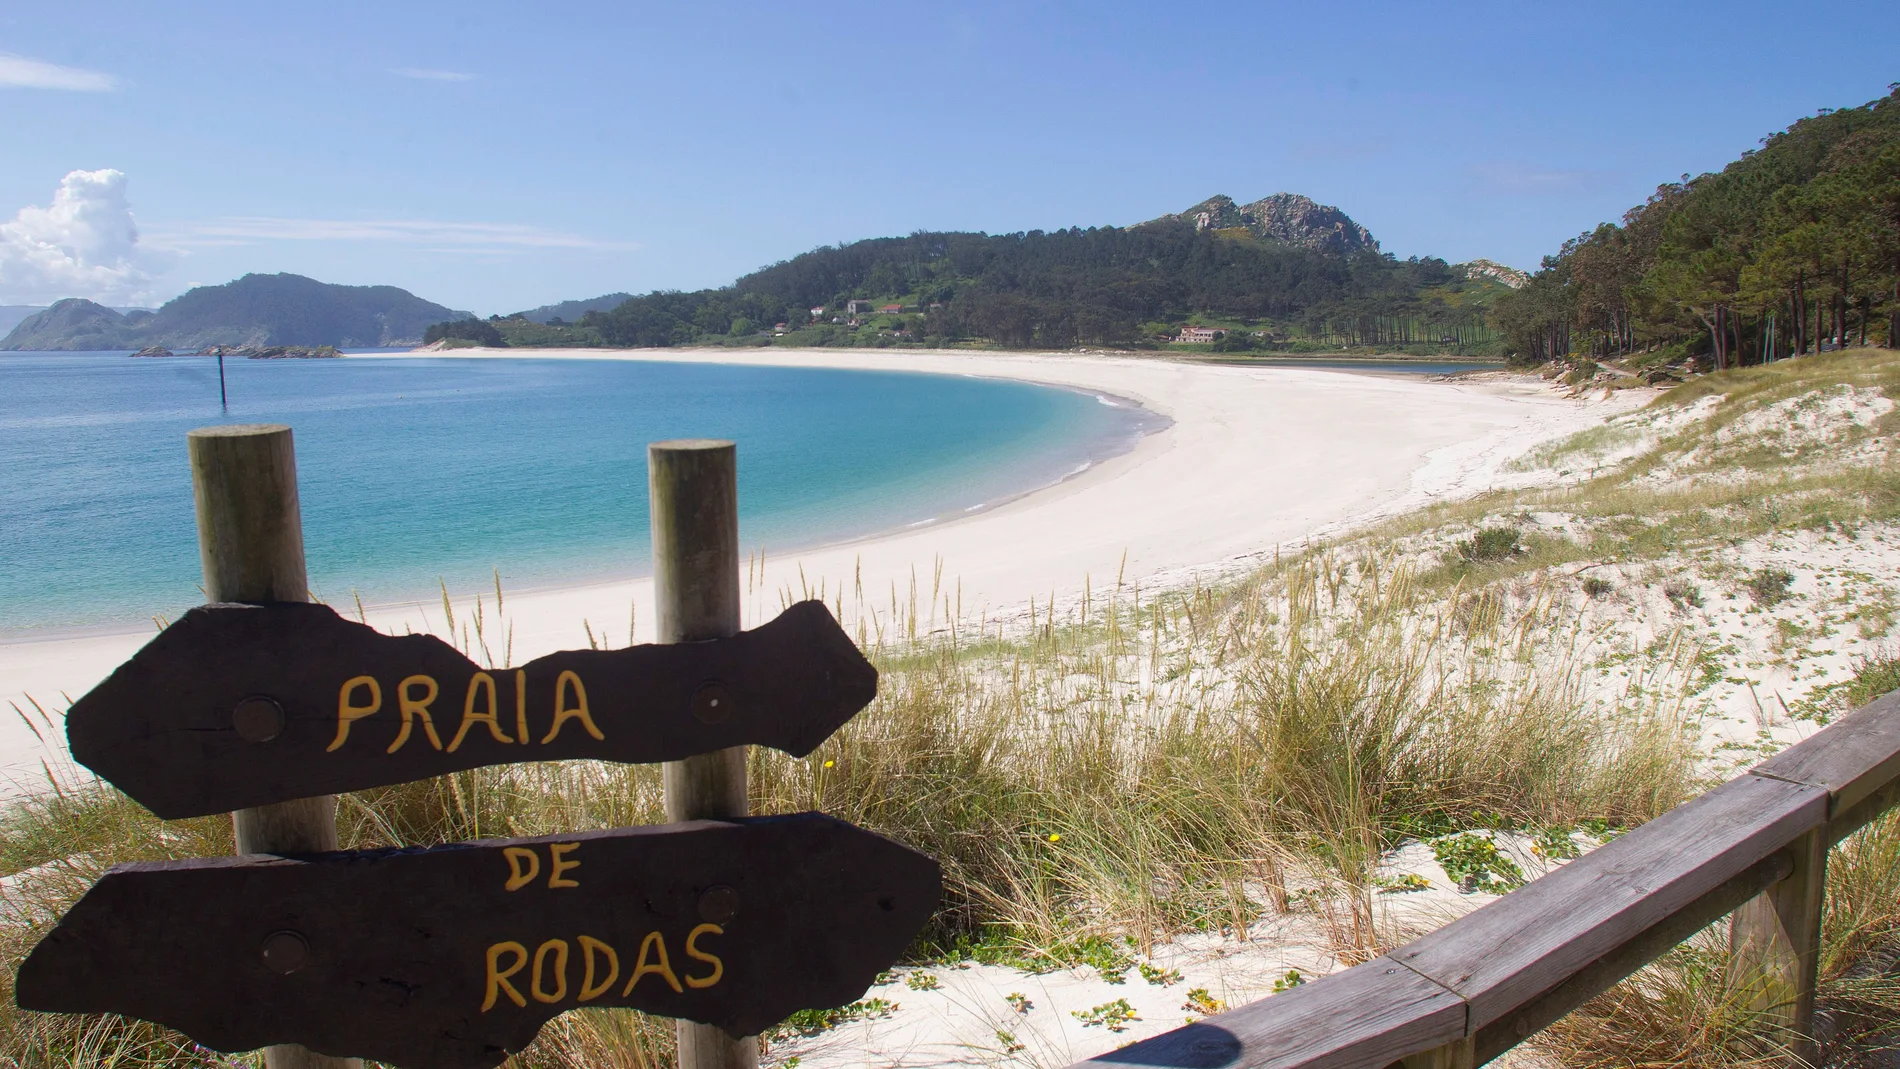 Vista general de la playa de Rodas del parque nacional de las islas Cíes en Vigo, Galicia.